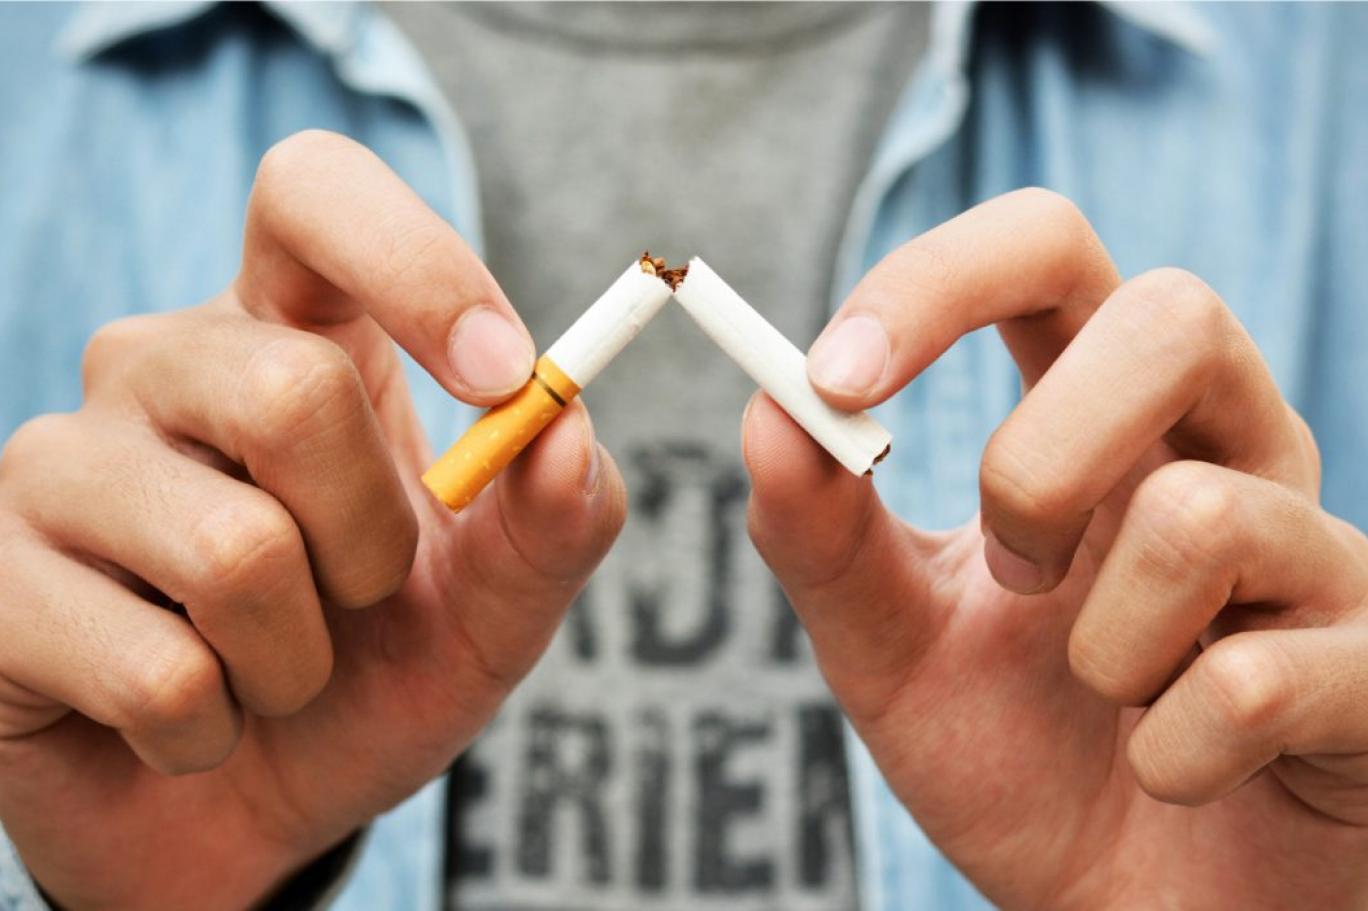 Boni-Smok là sản phẩm giúp bỏ thuốc lá hiệu quả, an toàn cho người hút thuốc lá